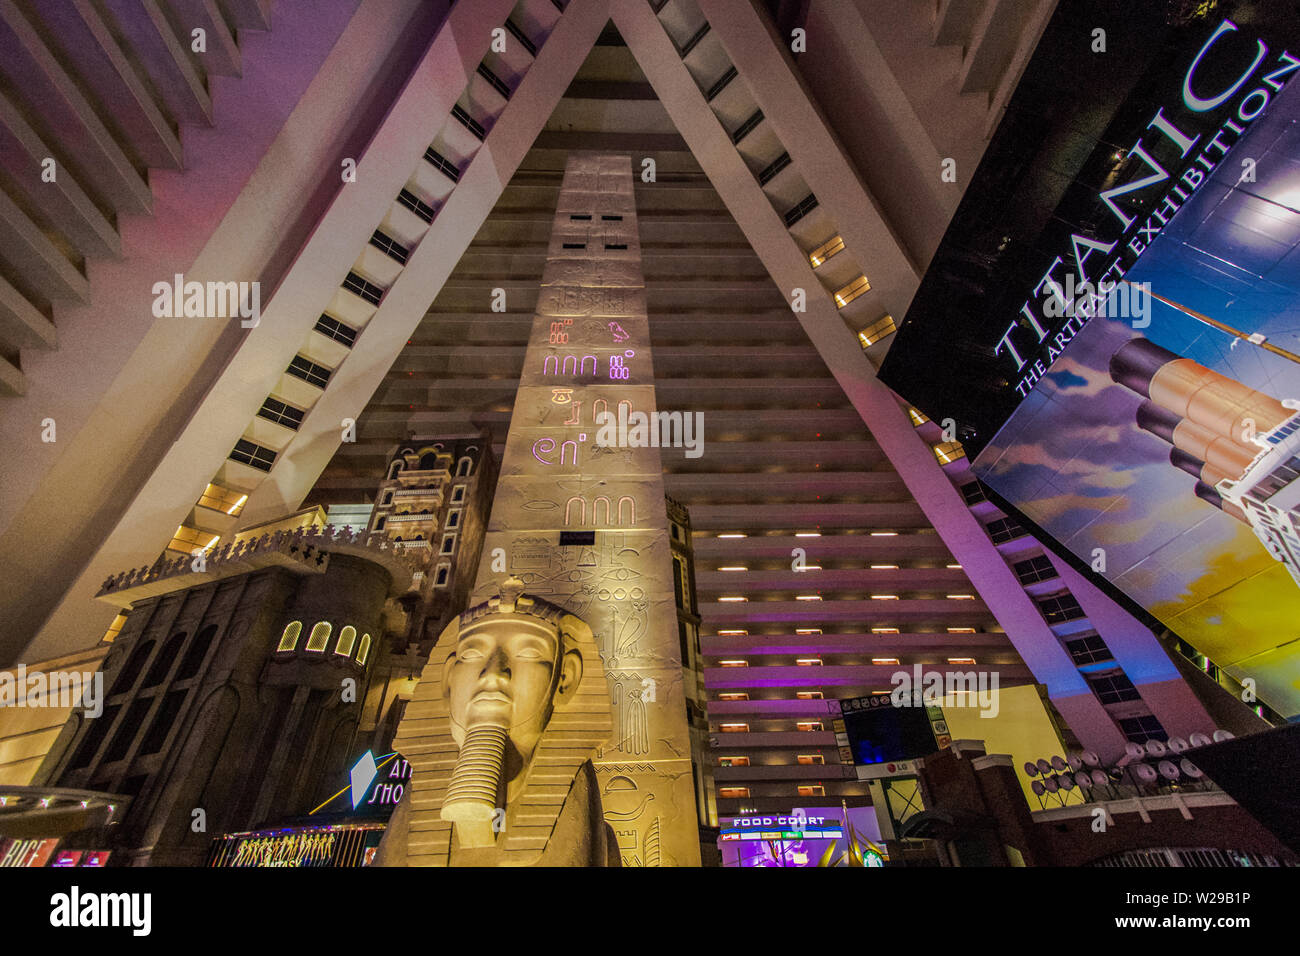 L'atrium de l'hôtel Luxor à Las Vegas. Le Luxor prétend avoir le plus grand atrium au monde à 29 millions de pieds cubes. Banque D'Images